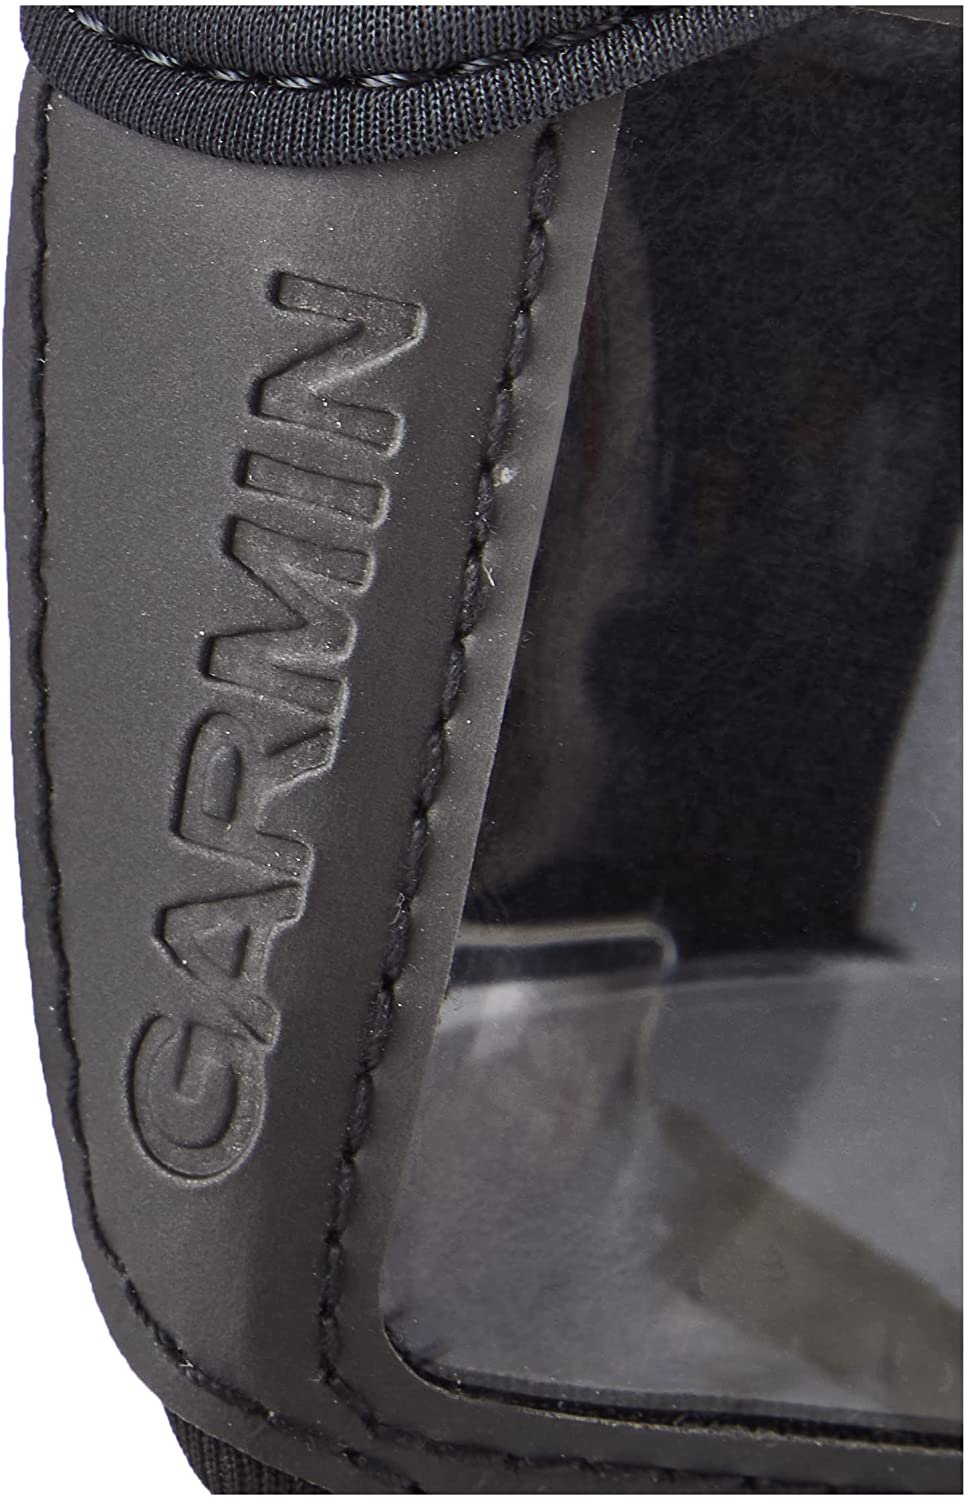 Garmin eTrex Carrying Case - image 4 of 7